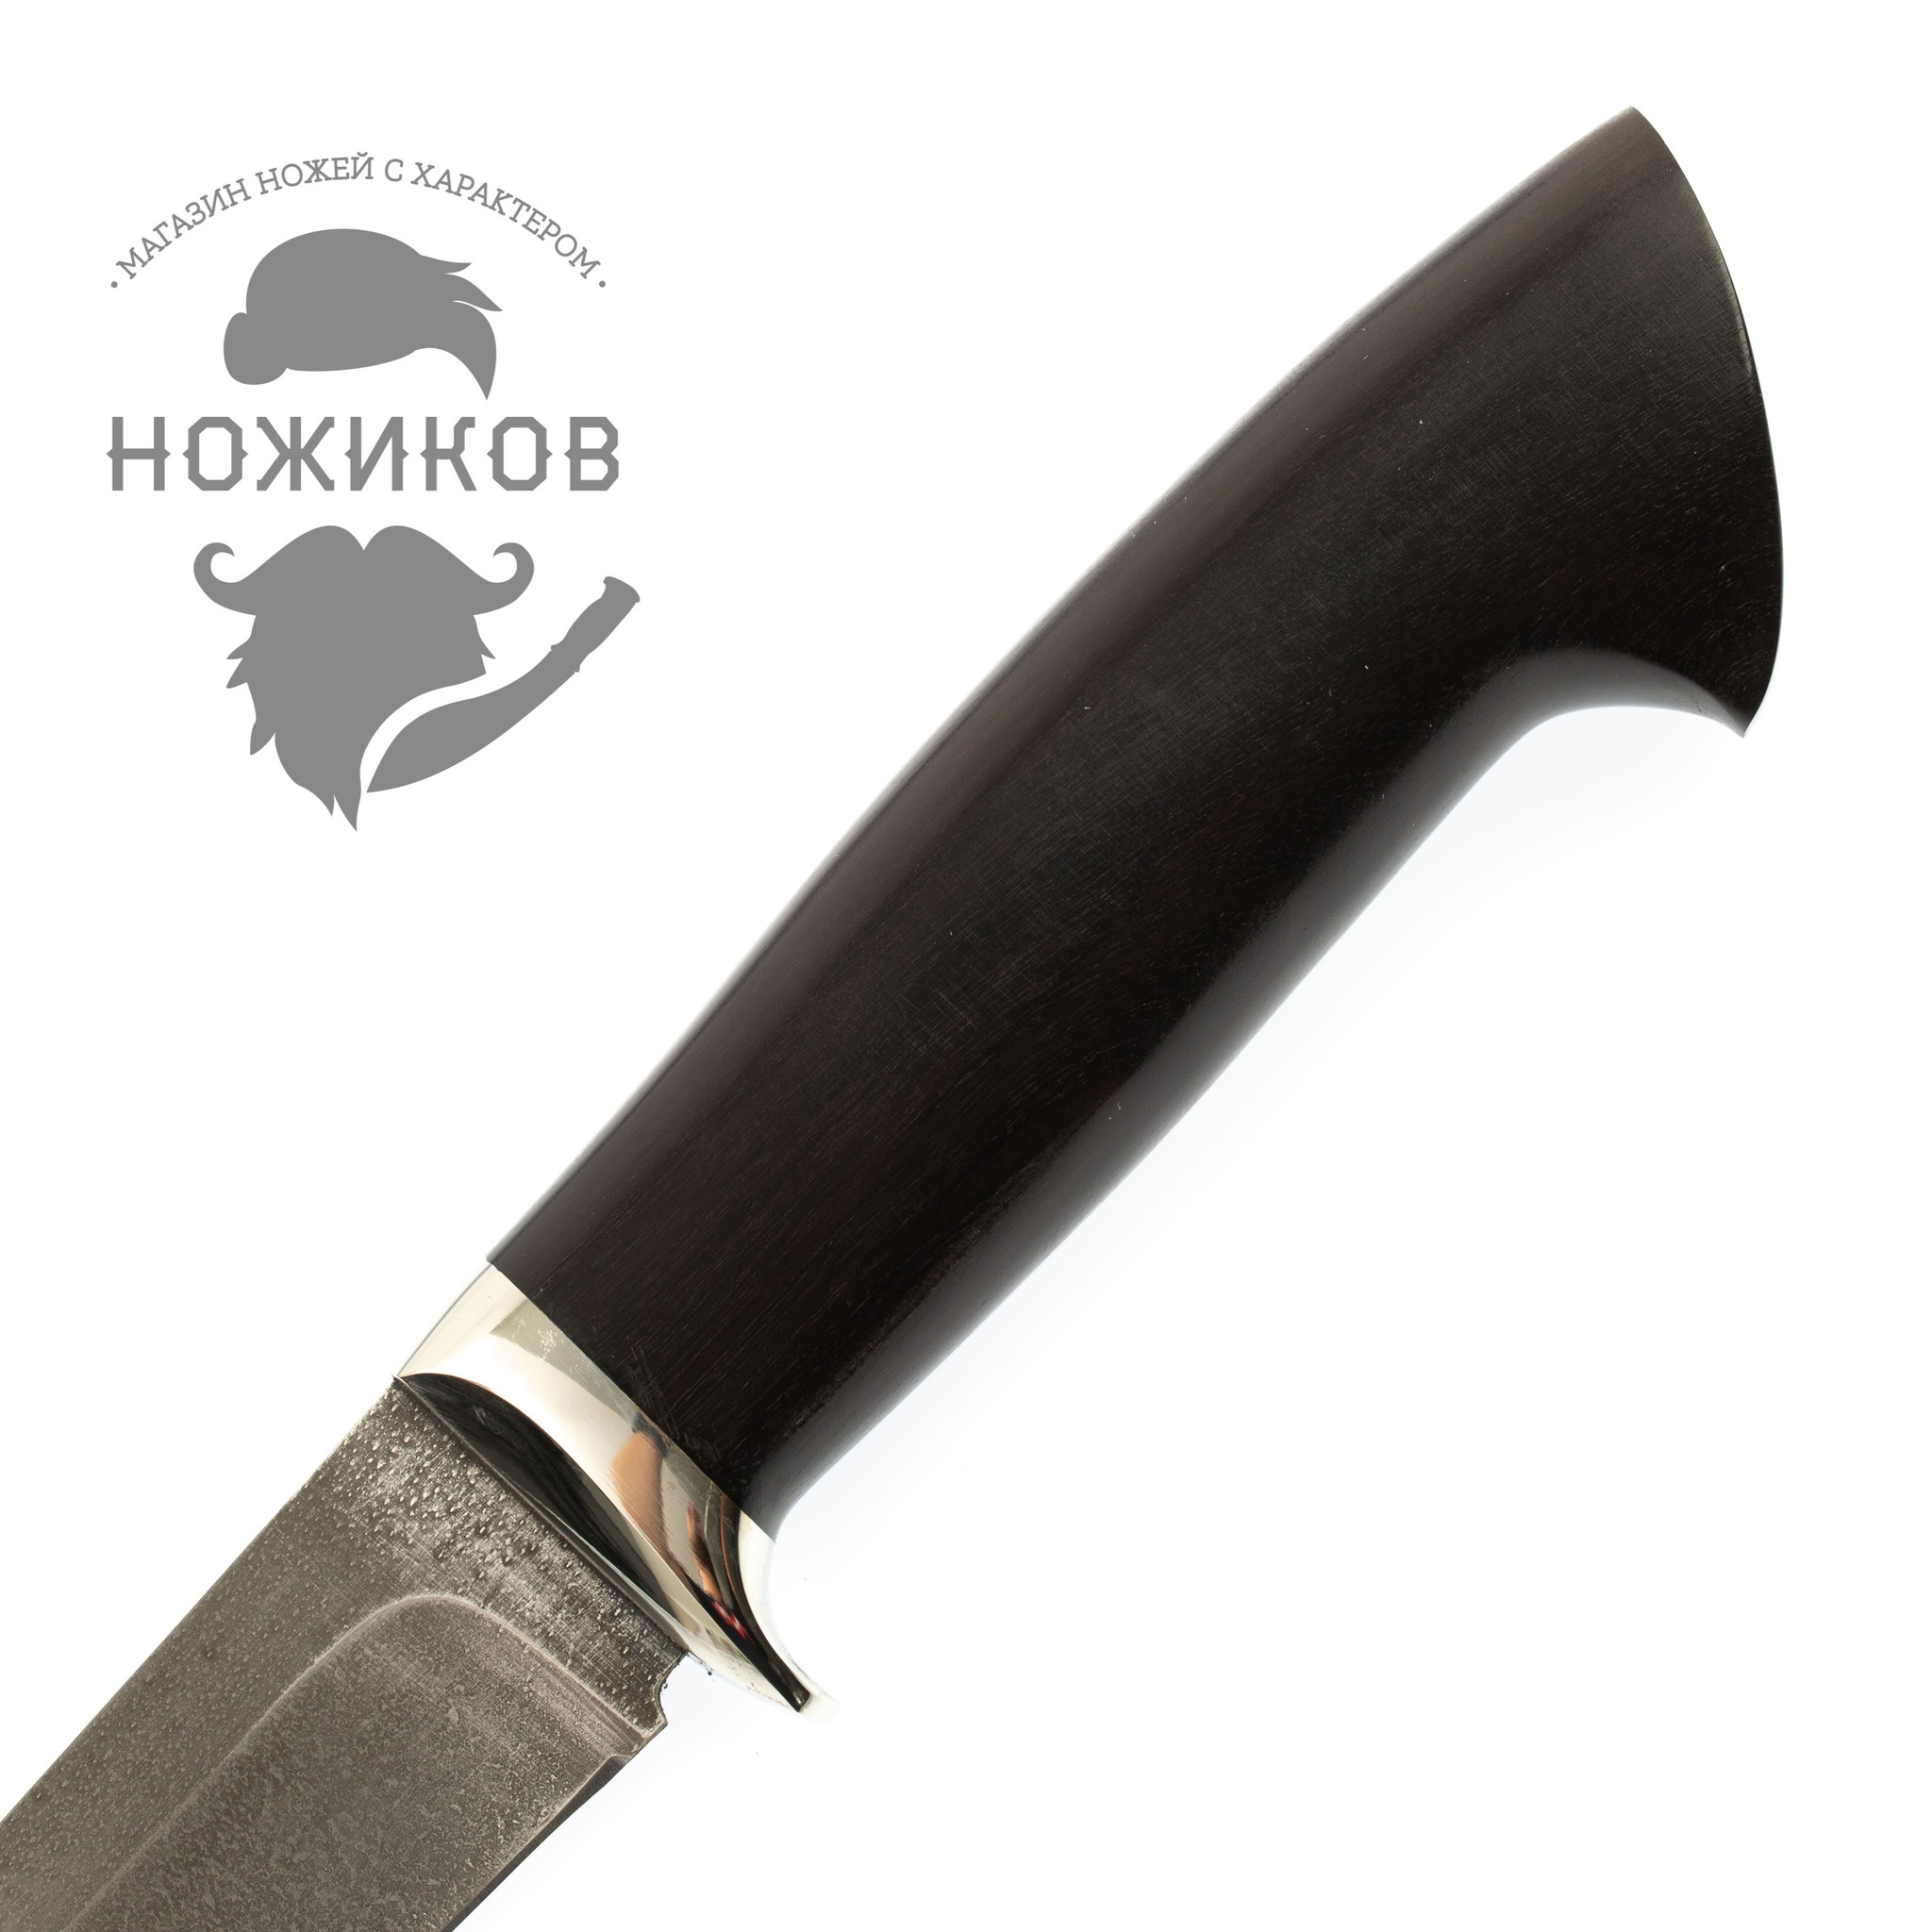 Нож Мангуст-2, сталь ХВ5, граб от Ножиков